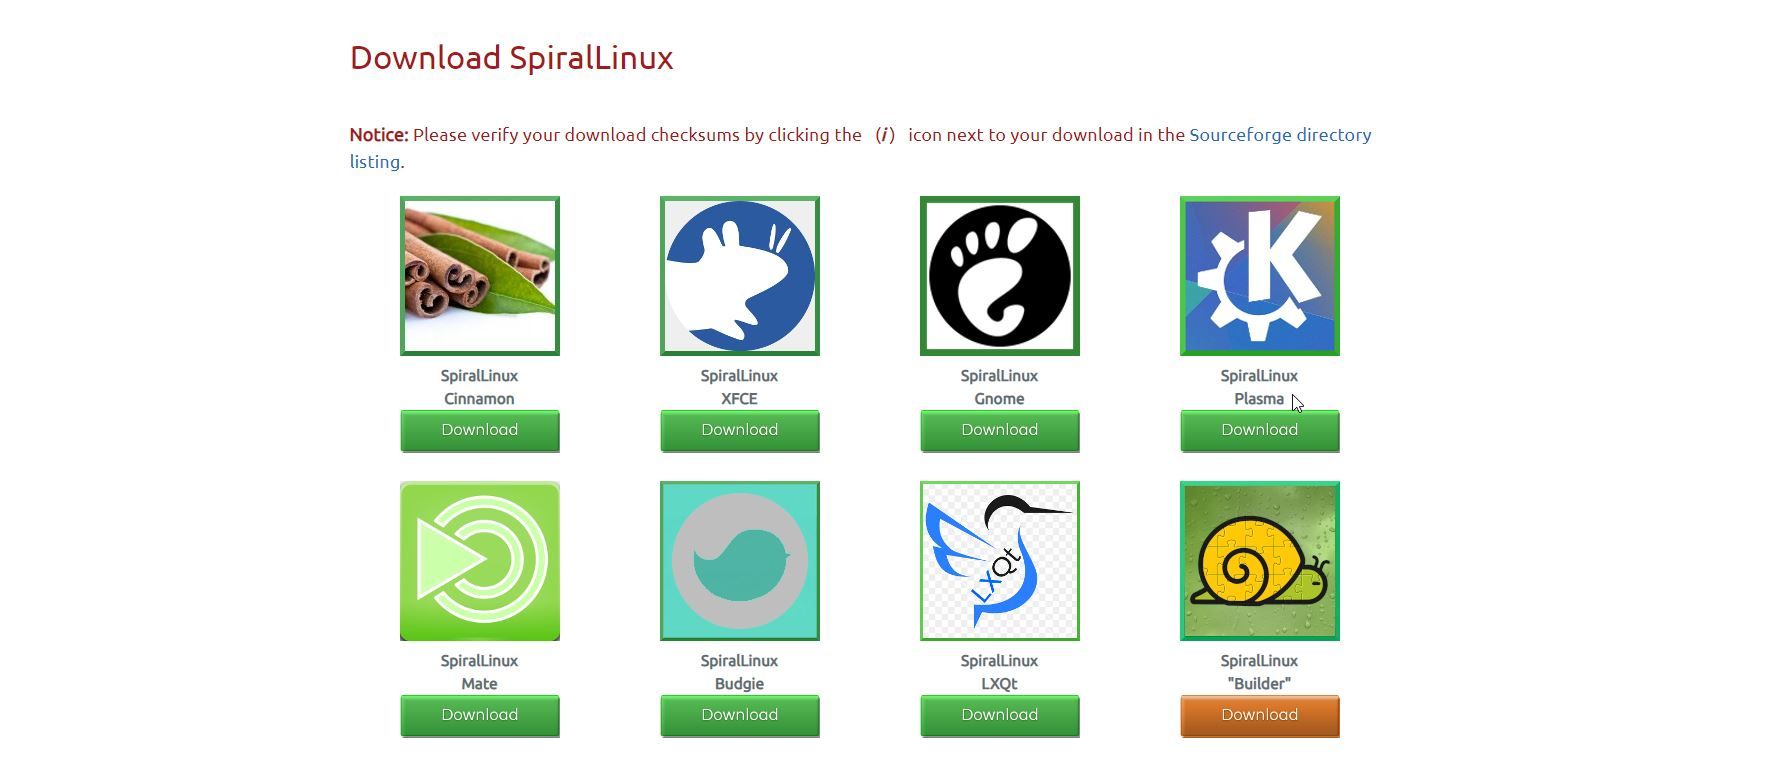 SpiralLinux desktop download links